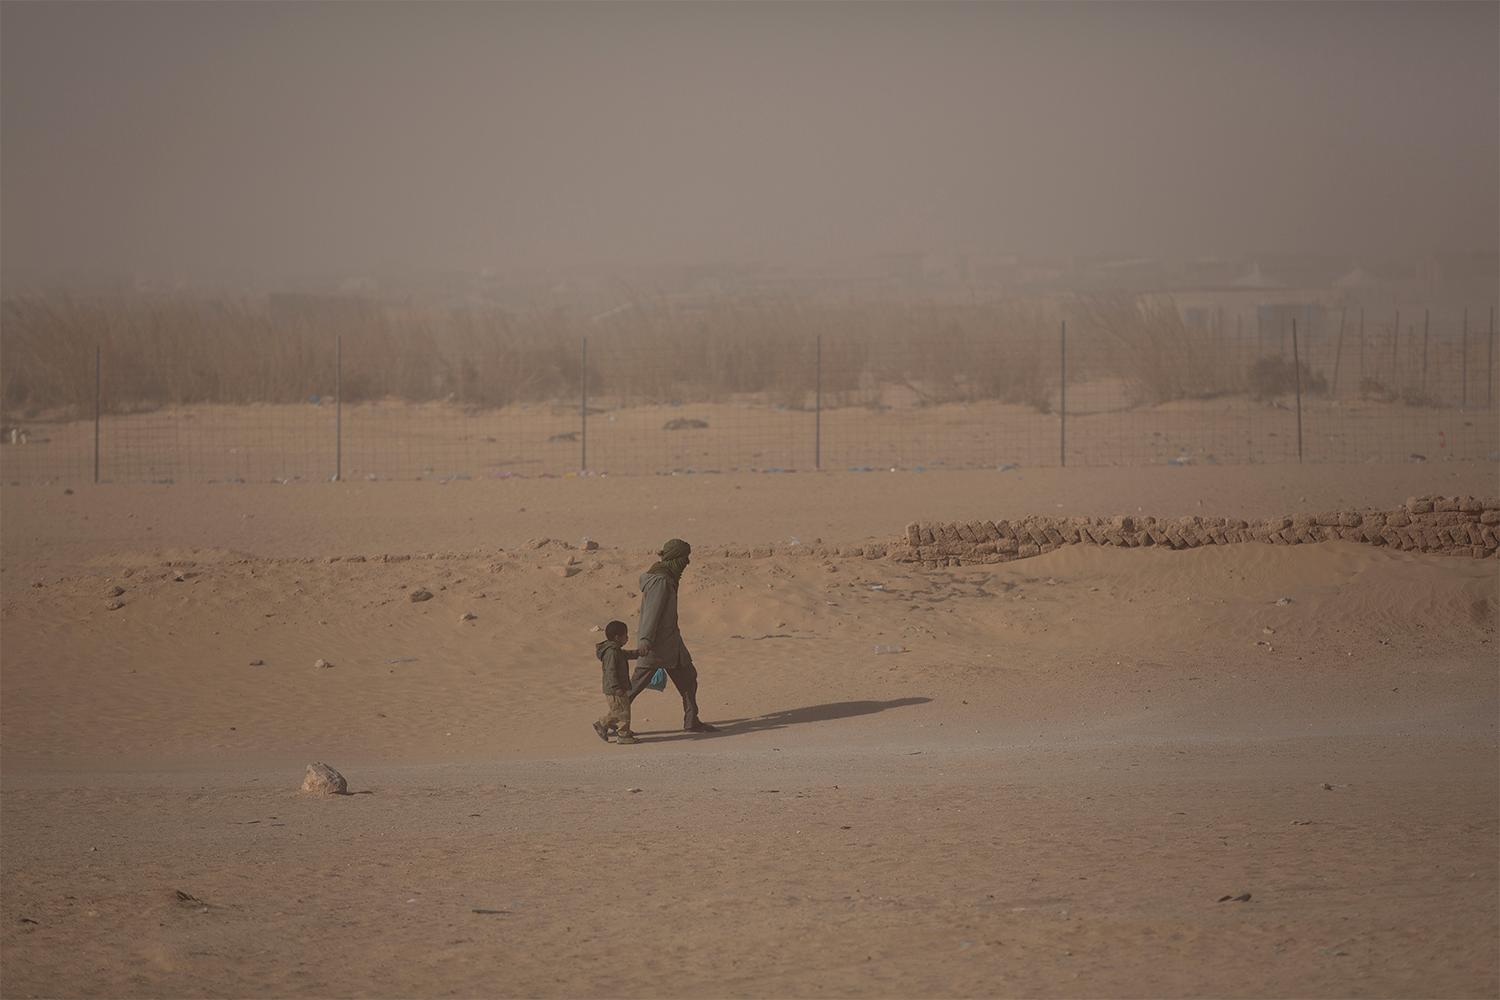 I flyktinglägren i öknen utanför Tindouf i Algeriet bor omkring 150 000 västsahariska flyktingar. Här finns inget vatten, ingenting växer. Barnen lider av näringsbrist. Foto: Johan Persson